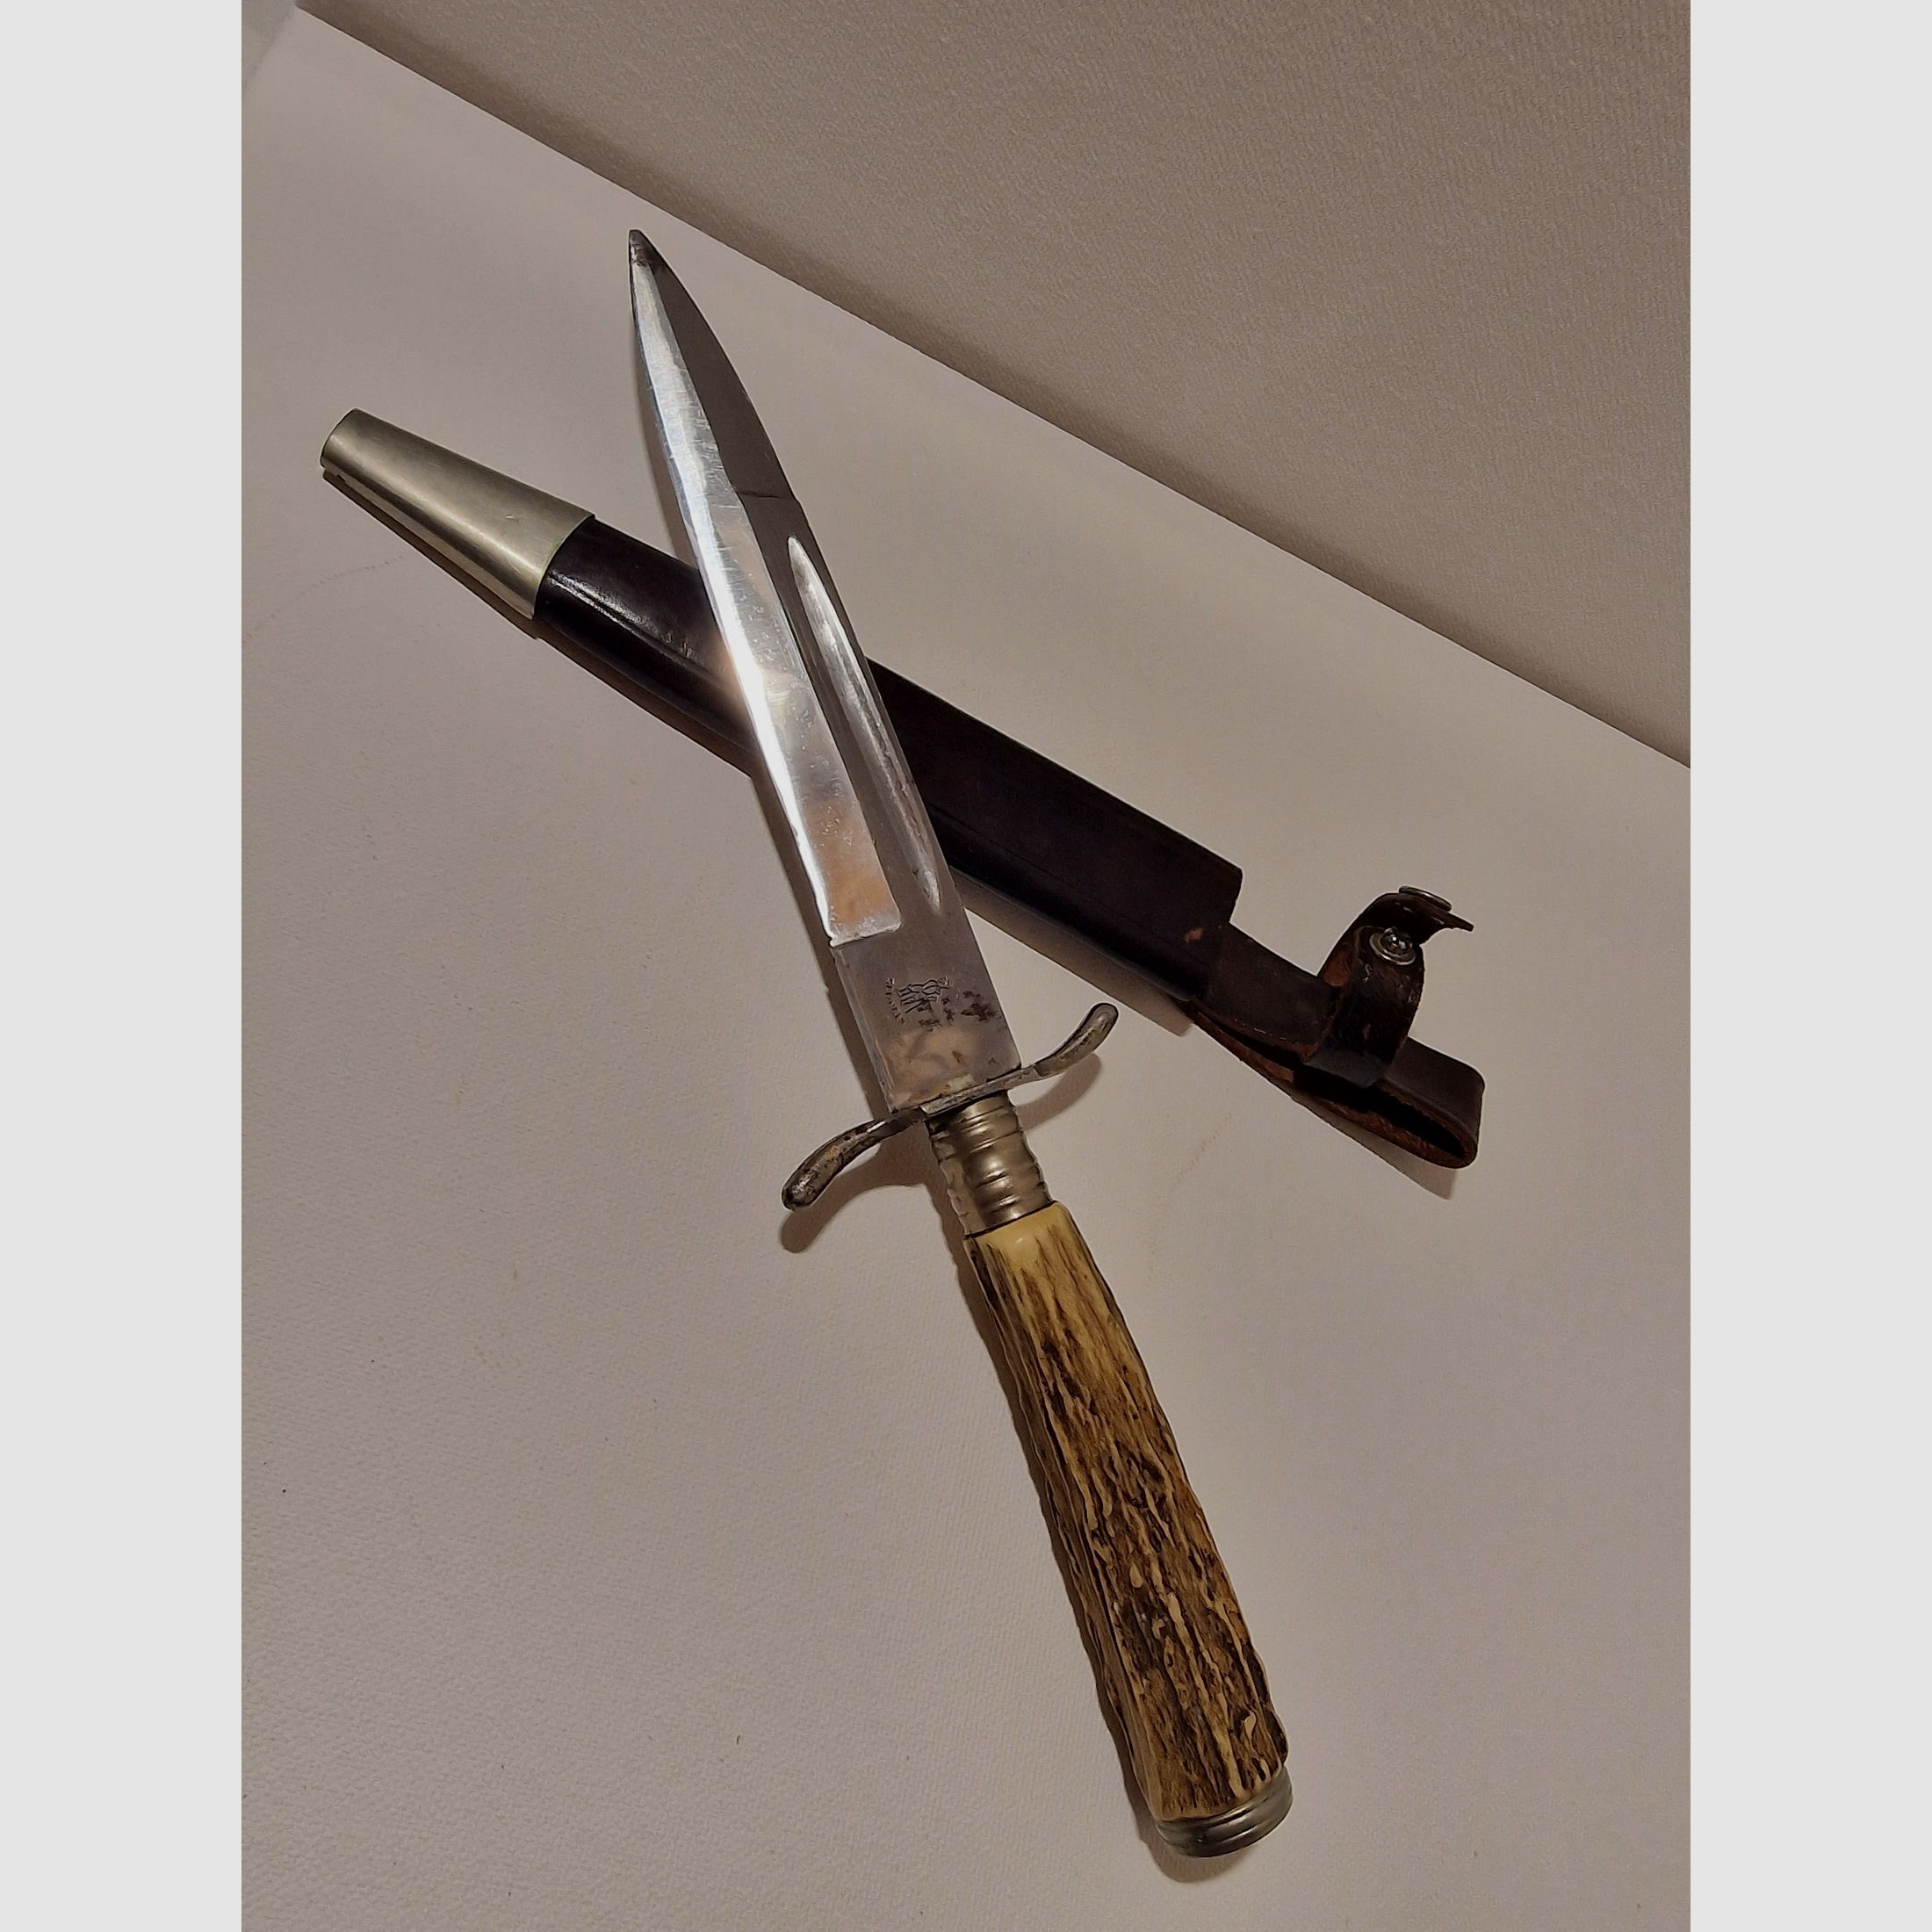 Jagdmesser Solingen, Klingenlänge von 13,5 cm, Hirschhorn